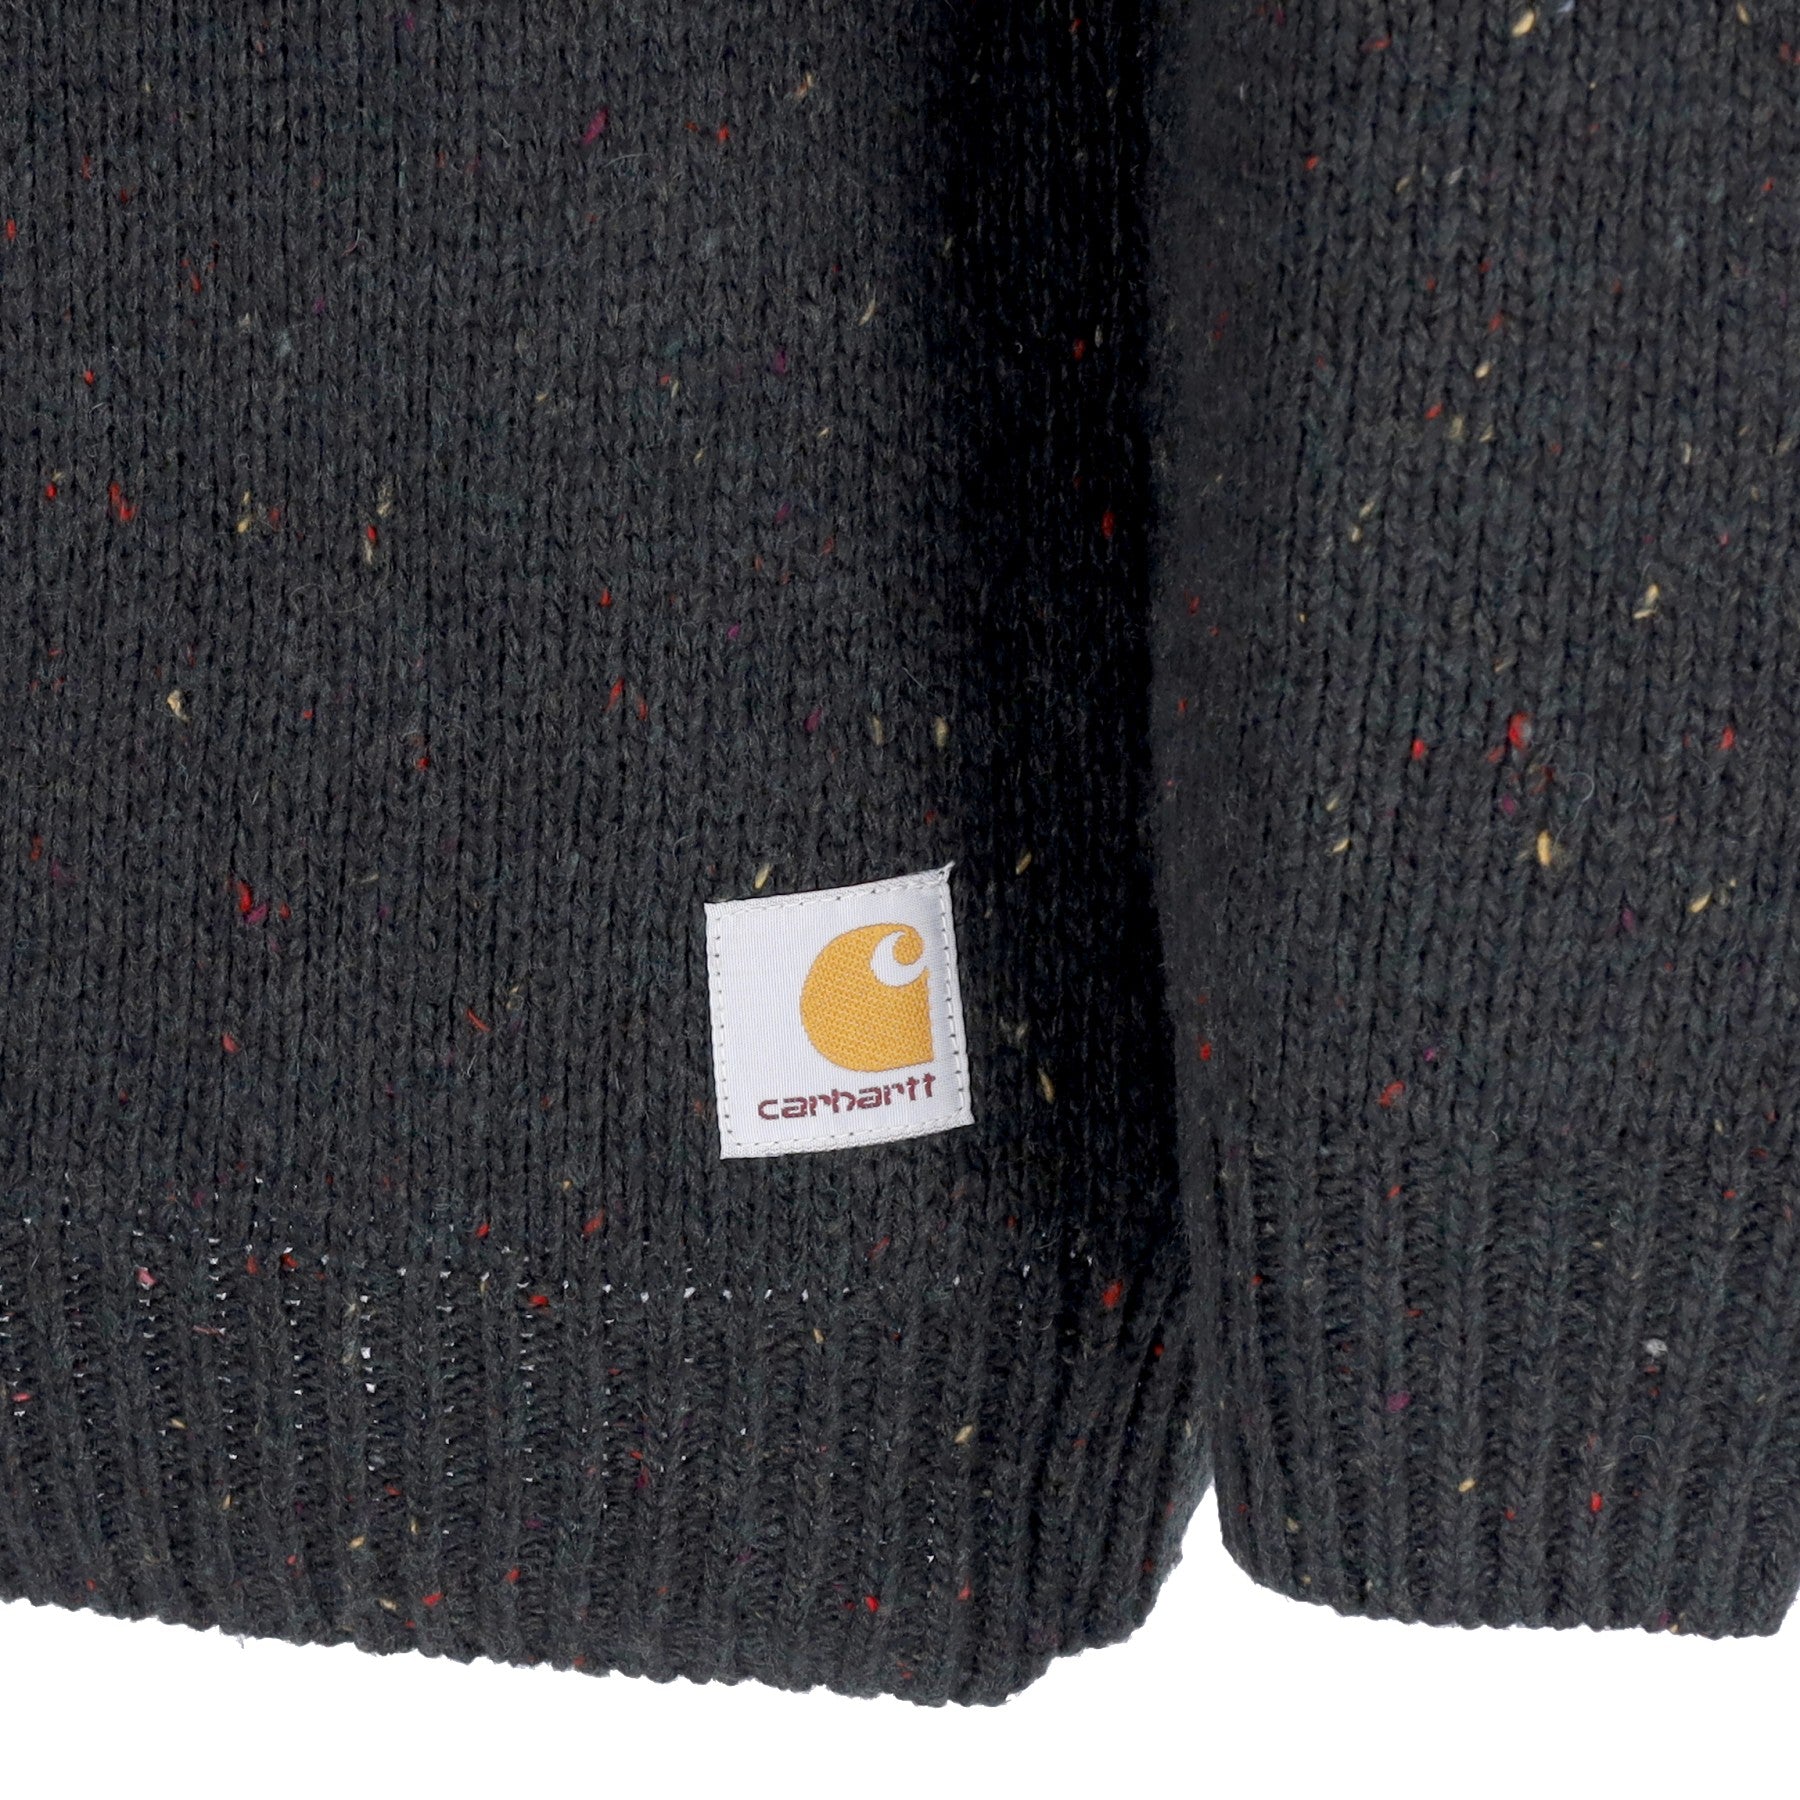 Maglione Uomo Anglistic Sweater Speckled Dark Cedar I010977